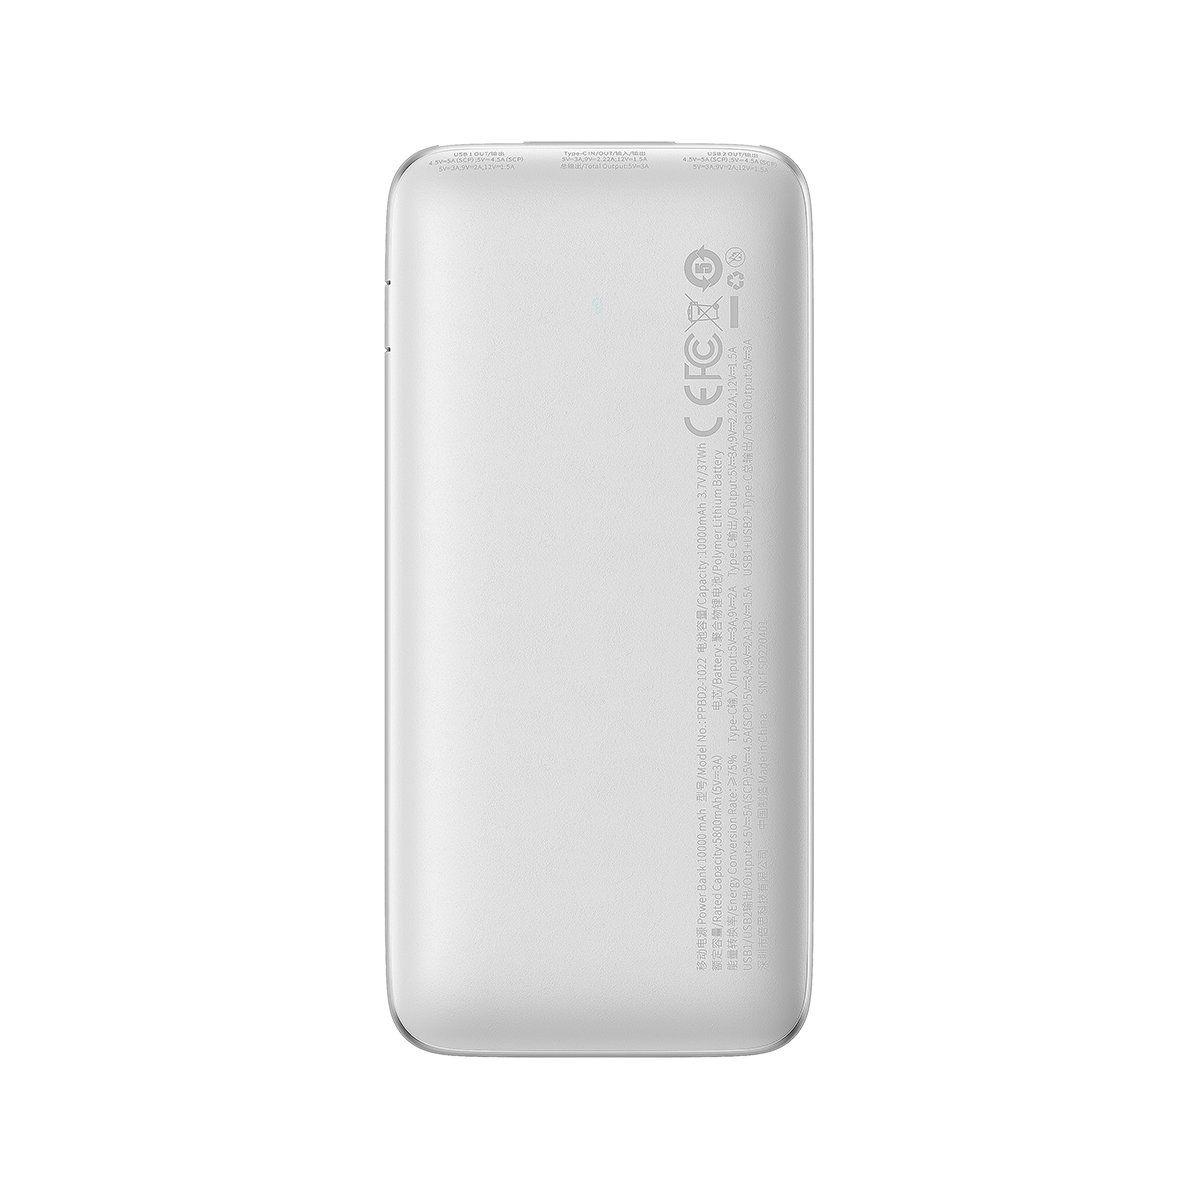 Baseus Bipow Pro powerbank 10000mAh 22.5W + USB 3A cable 0.3m white (PPBD040002)